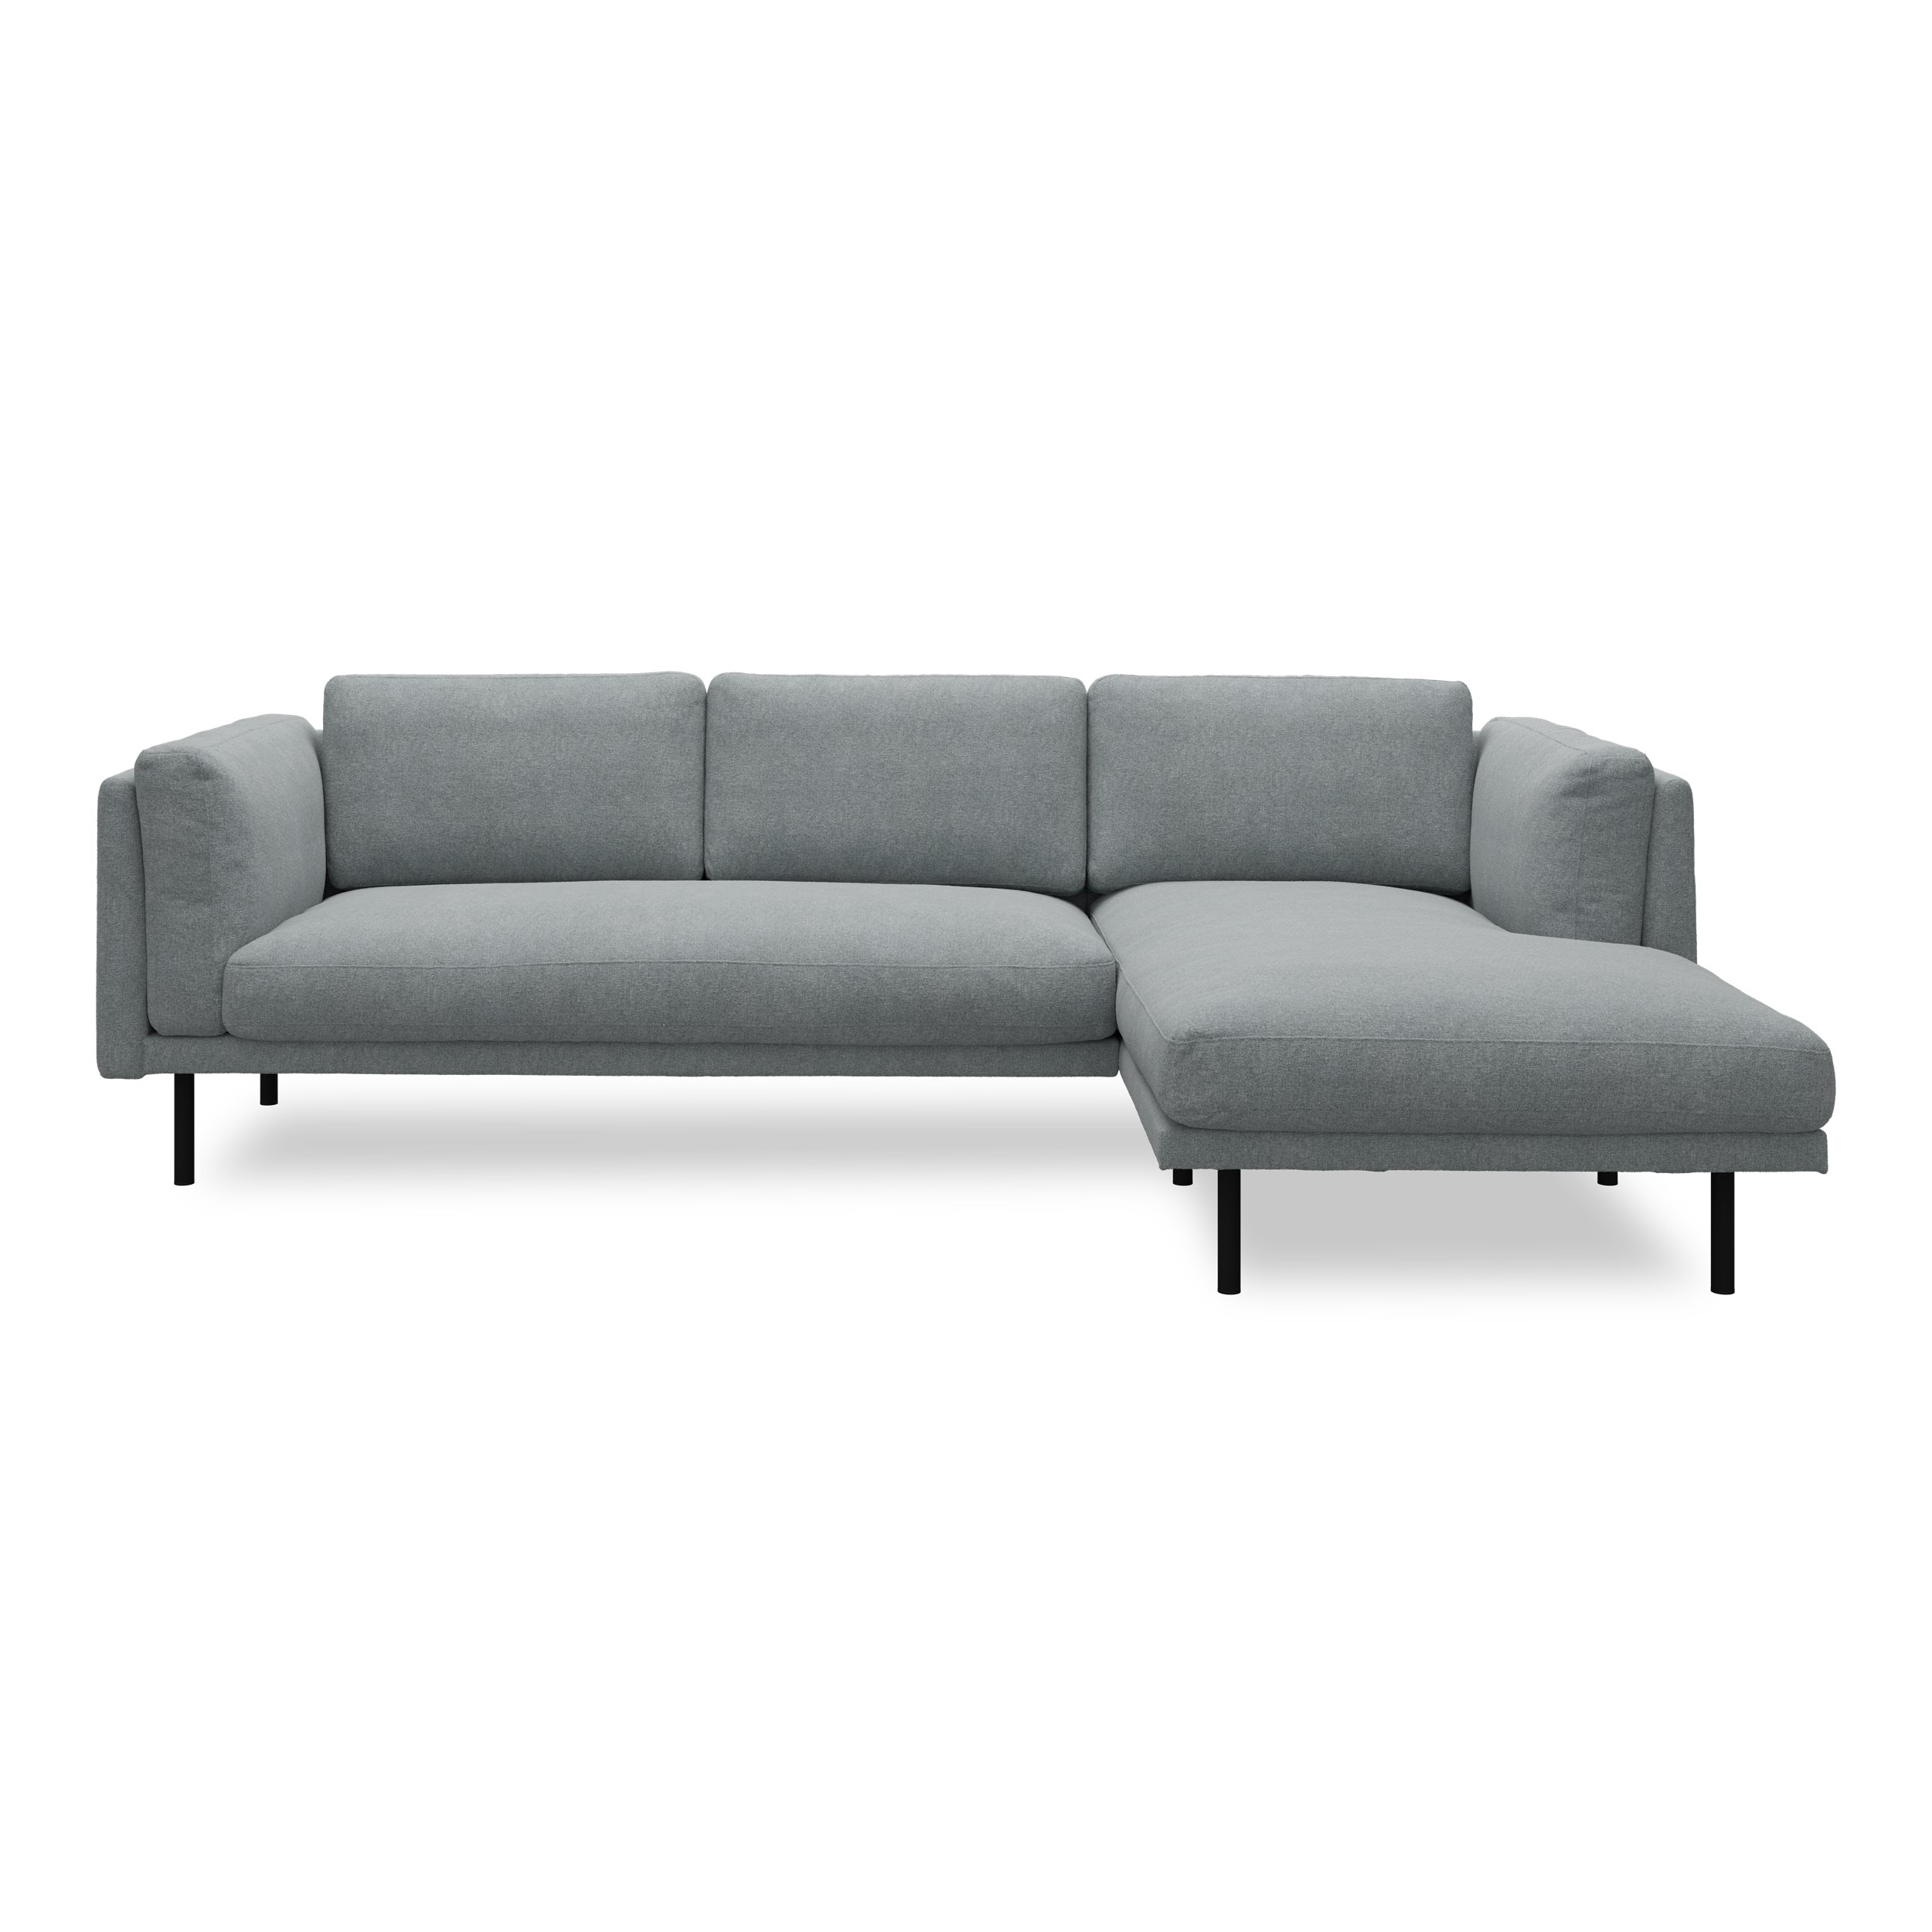 Nebel högervänd soffa med schäslong - Soil 158 Niagara textil och svart pulverlackerad metall